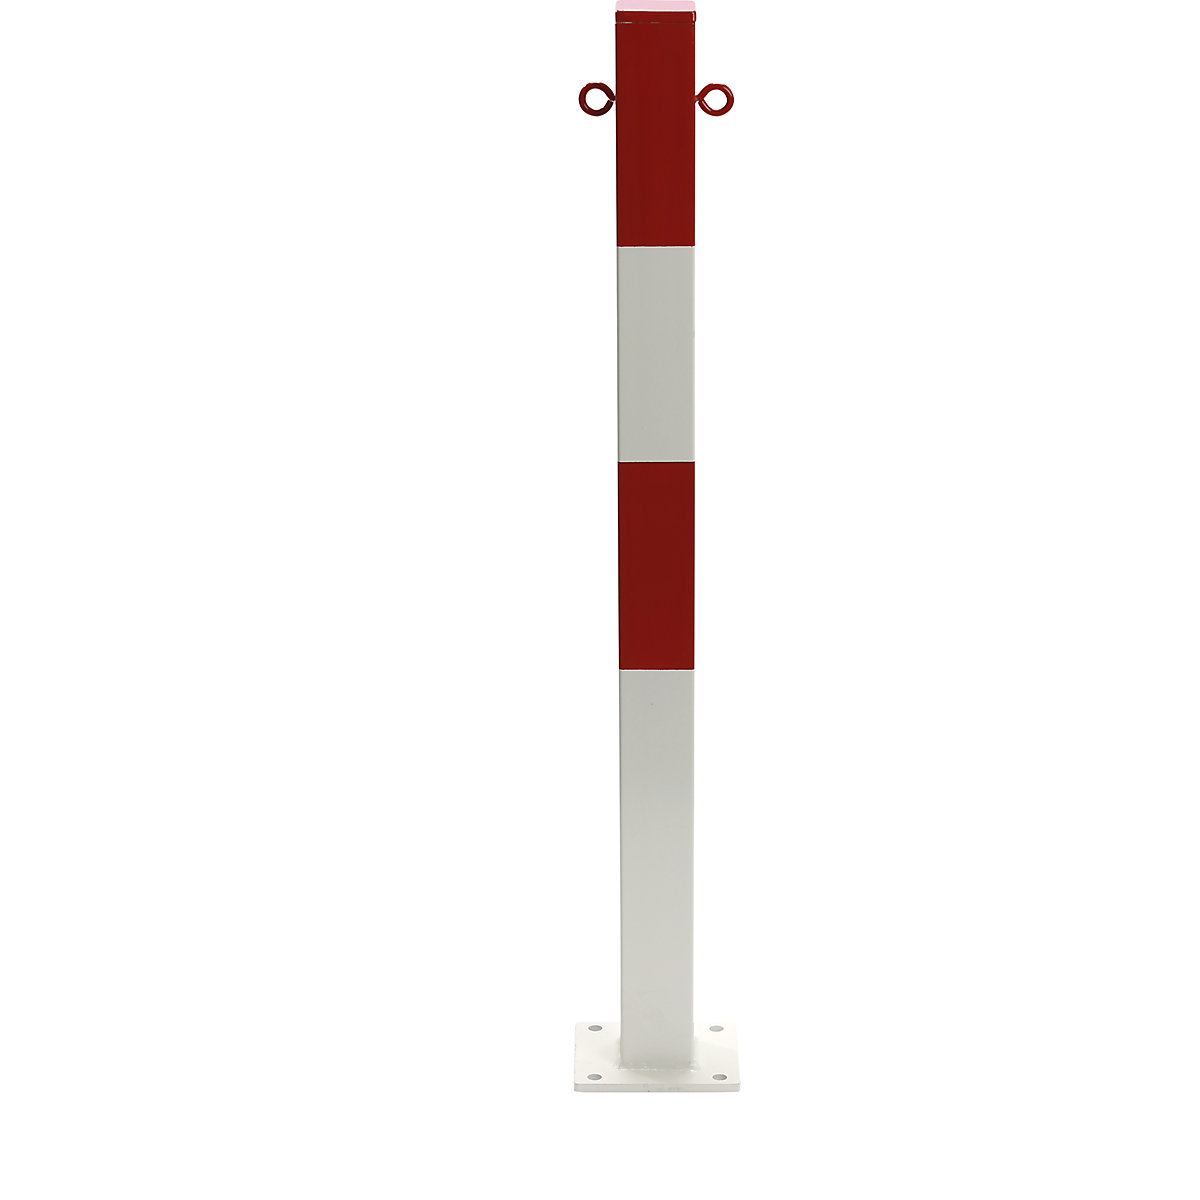 Zahradzovací stĺpik, na pripevnenie hmoždinkami, 70 x 70 mm, červeno-bielo lakované, 2 oká-3